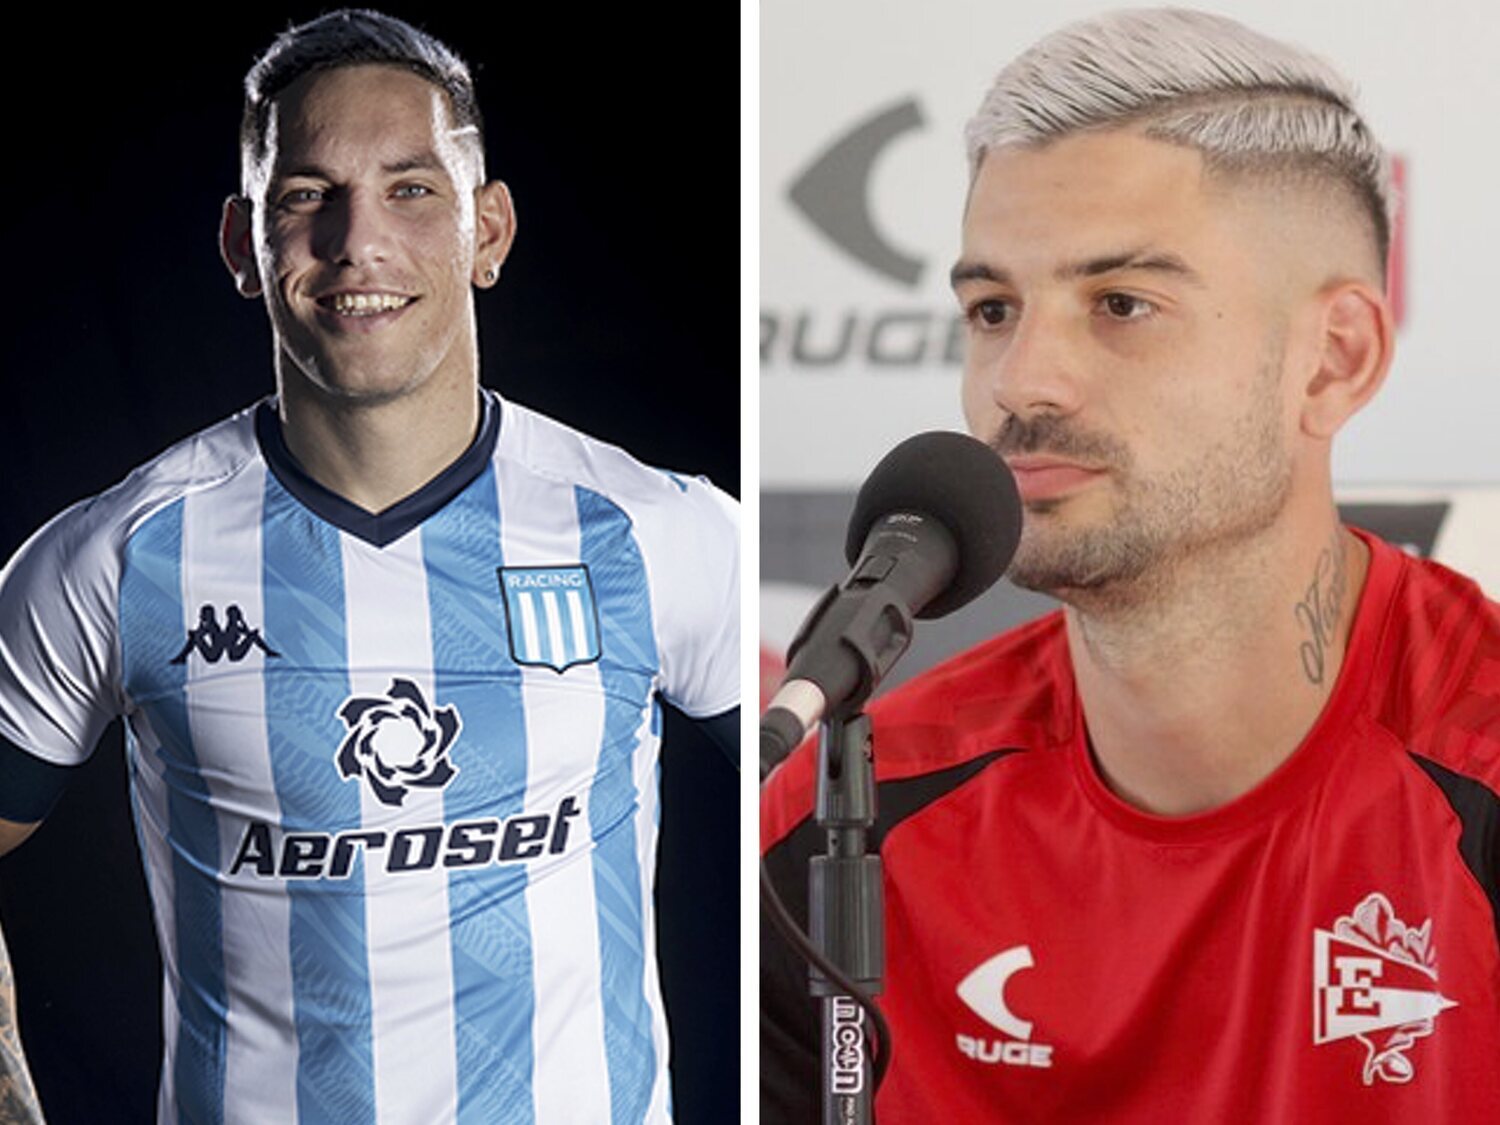 Denuncian a dos populares futbolistas argentinos por masturbarse en público